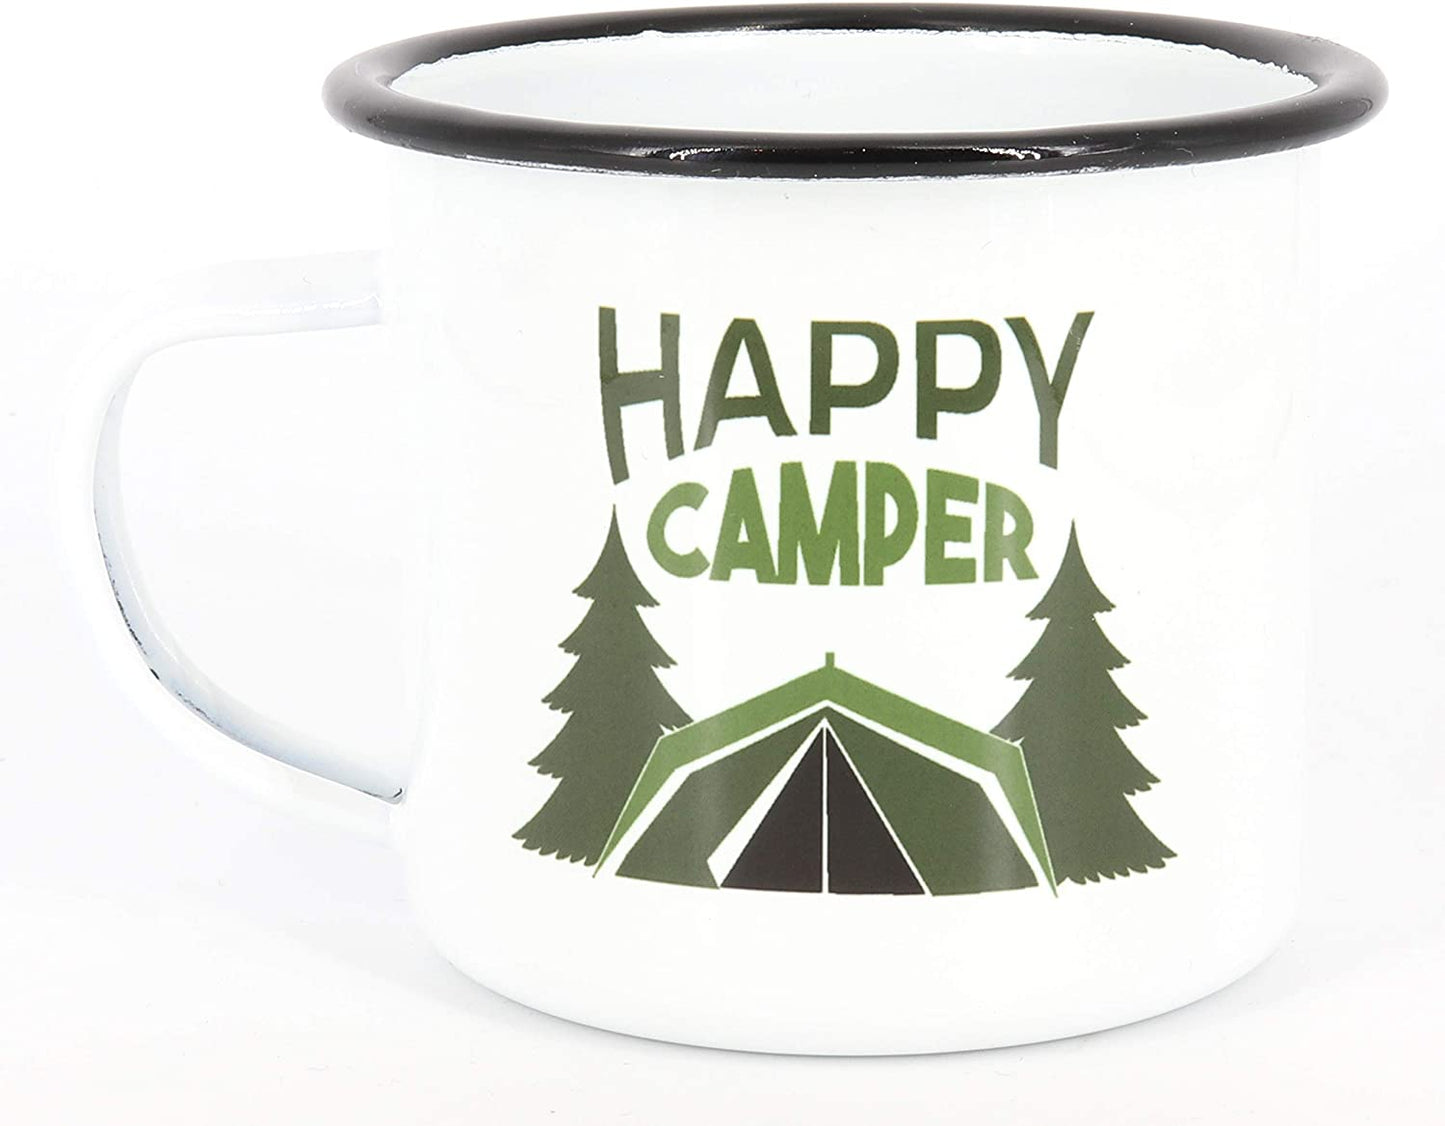 Emaille Tasse Happy Camper, Emaille Tasse Camping, Edelstahl-Becher, Metall-Tasse, Campingbecher, Kaffeetasse, Zelt